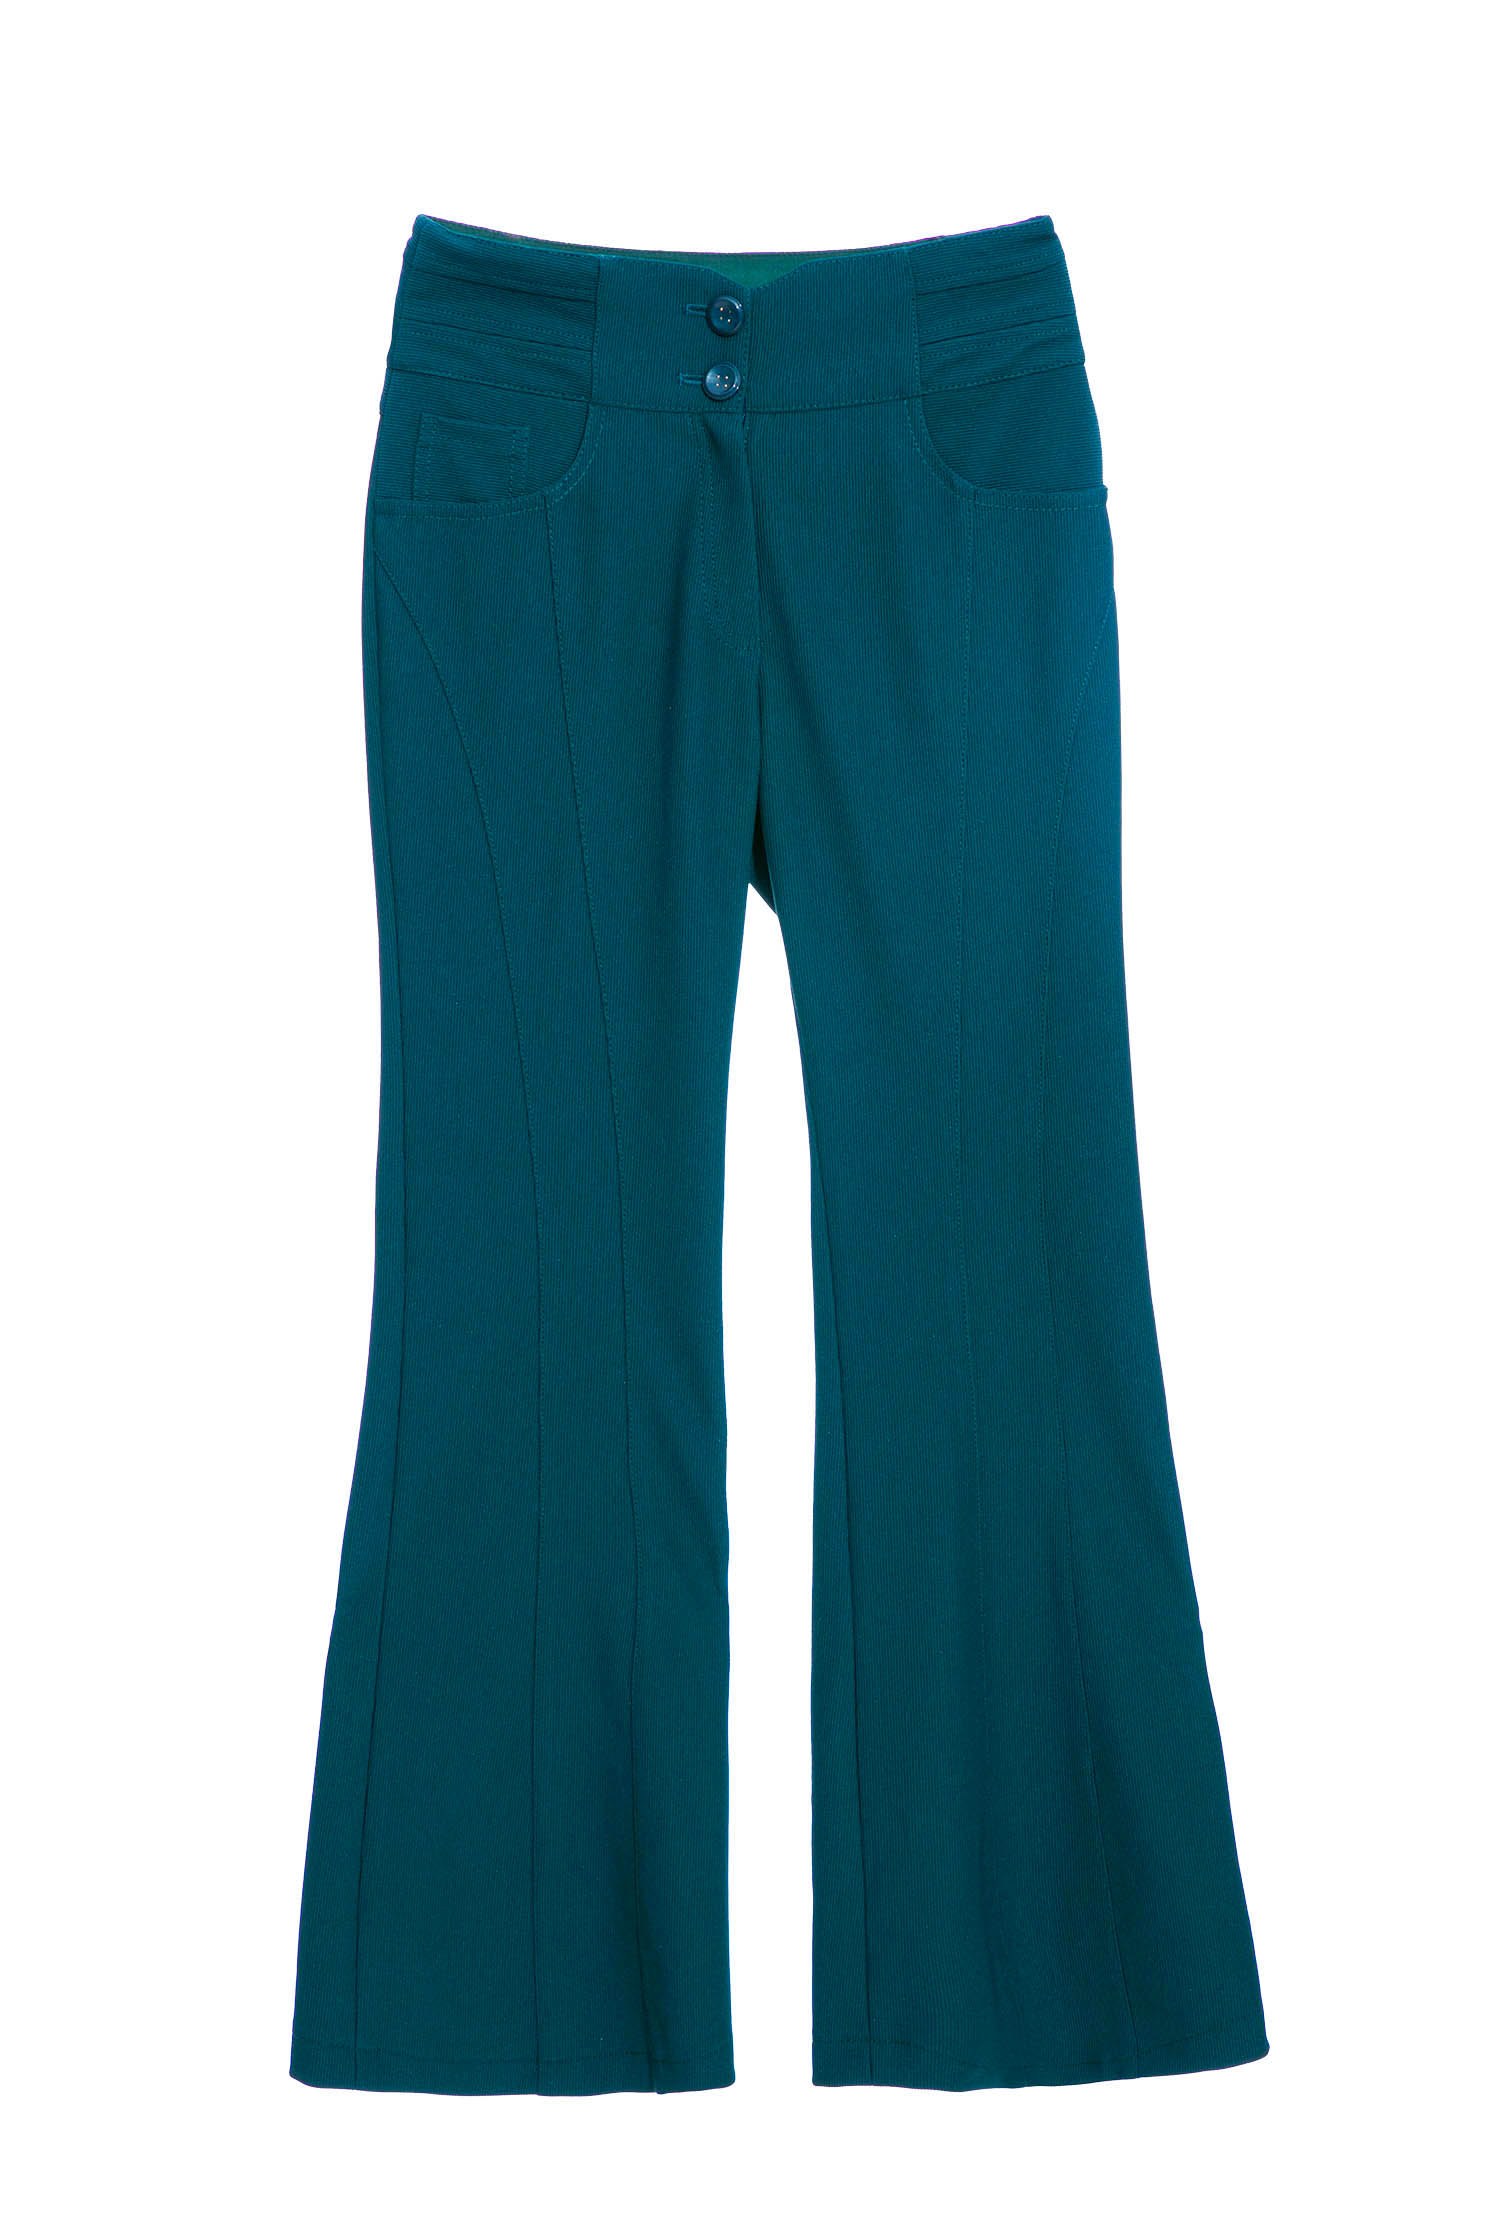 銅綠色喇叭長褲銅綠色喇叭長褲,喇叭褲,春夏穿搭,條紋,褲子,西裝褲,長褲